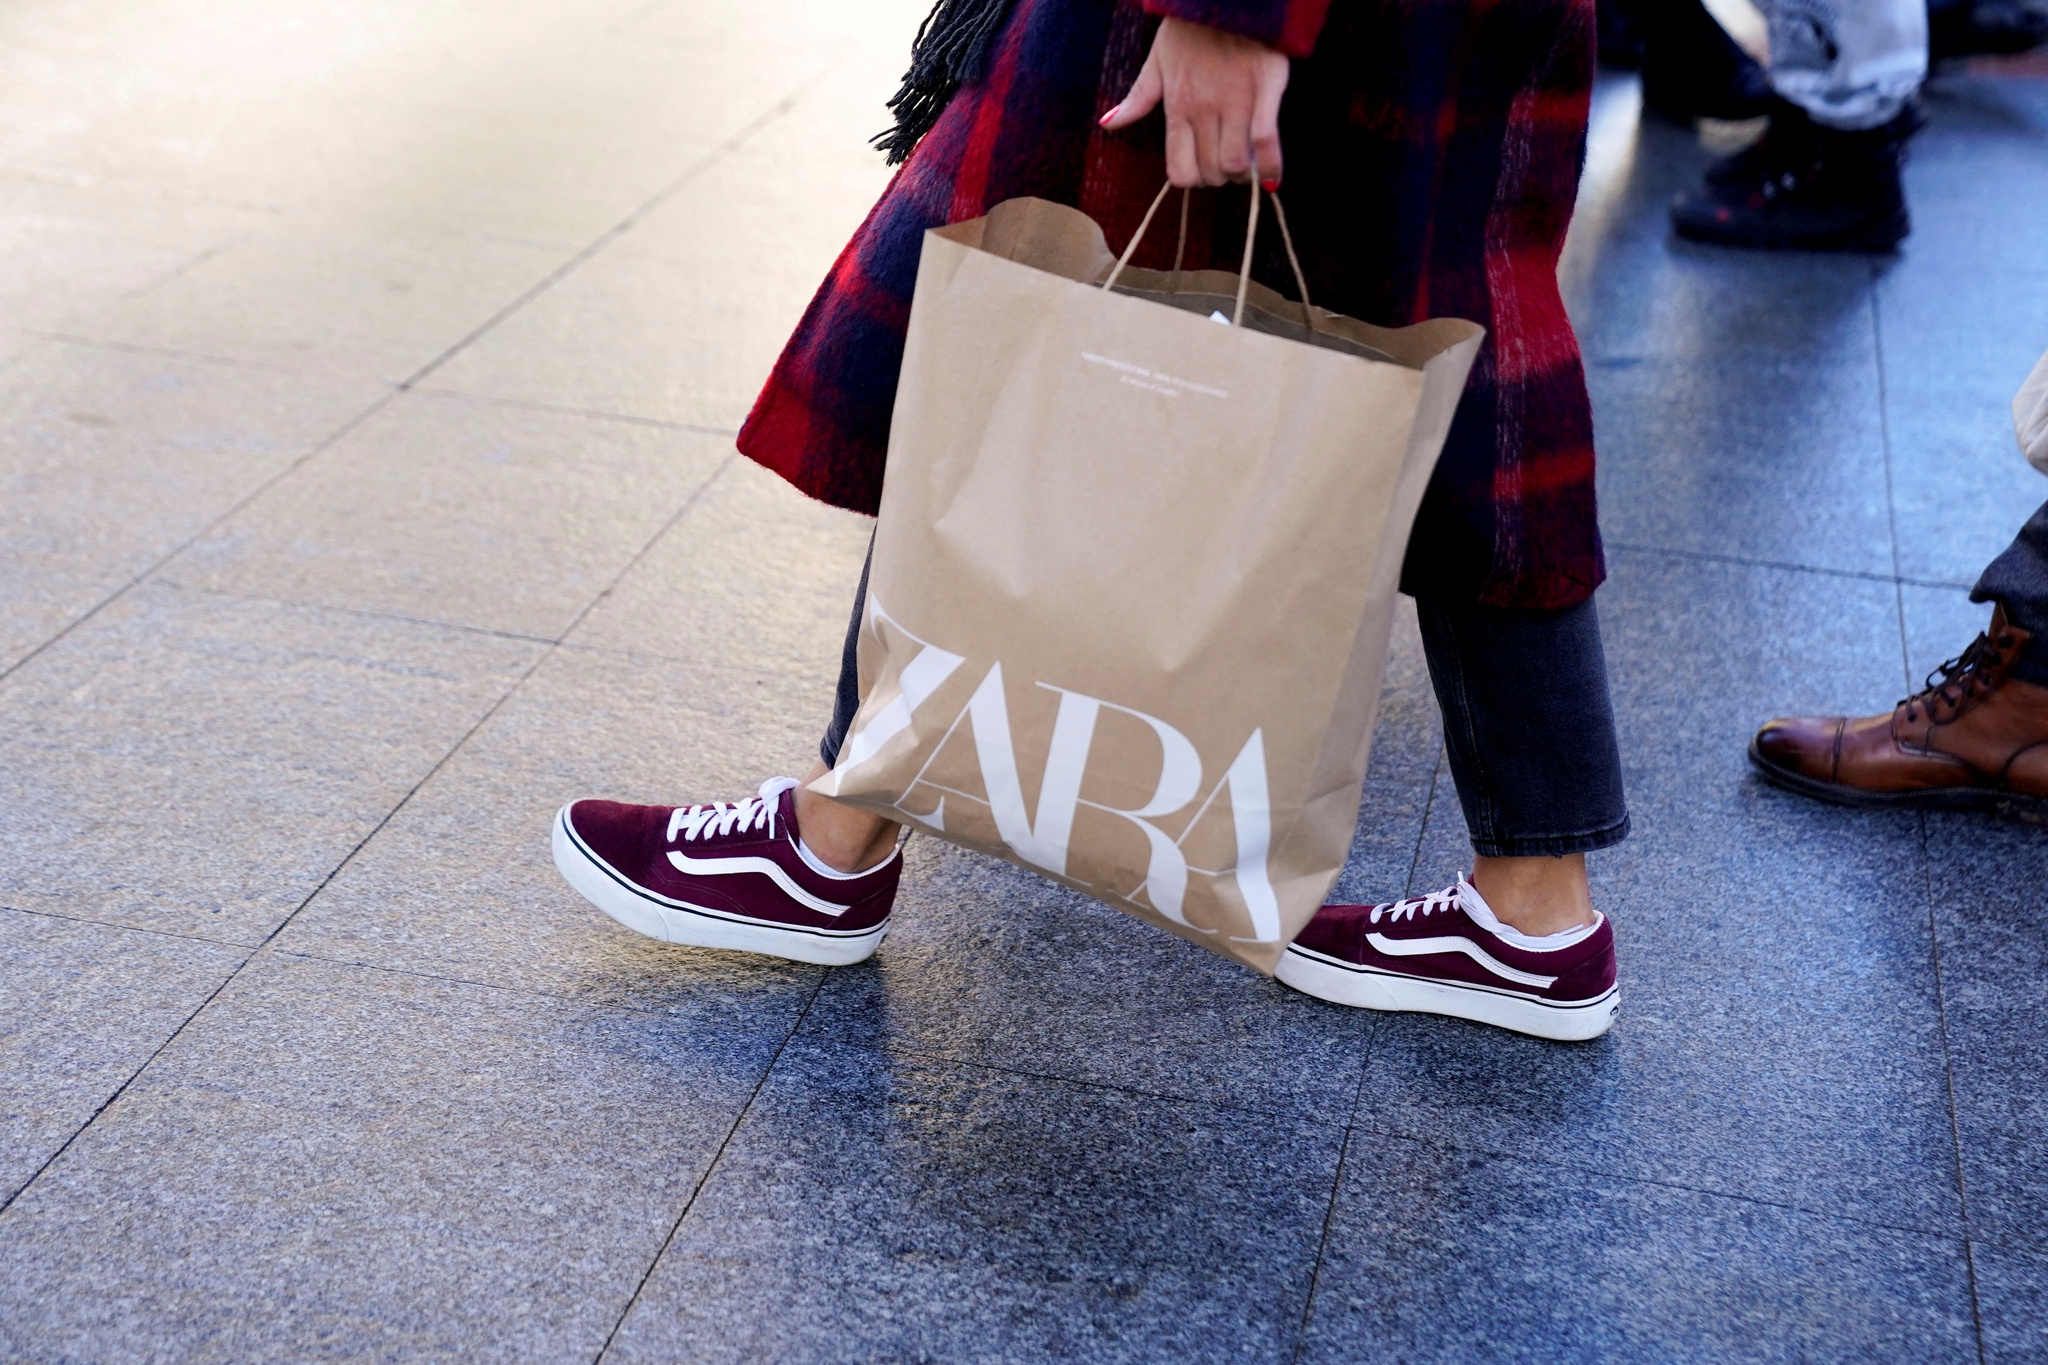 Pre-Owned: A plataforma de segunda mão da Zara já está em Portugal -  Distribuição Hoje